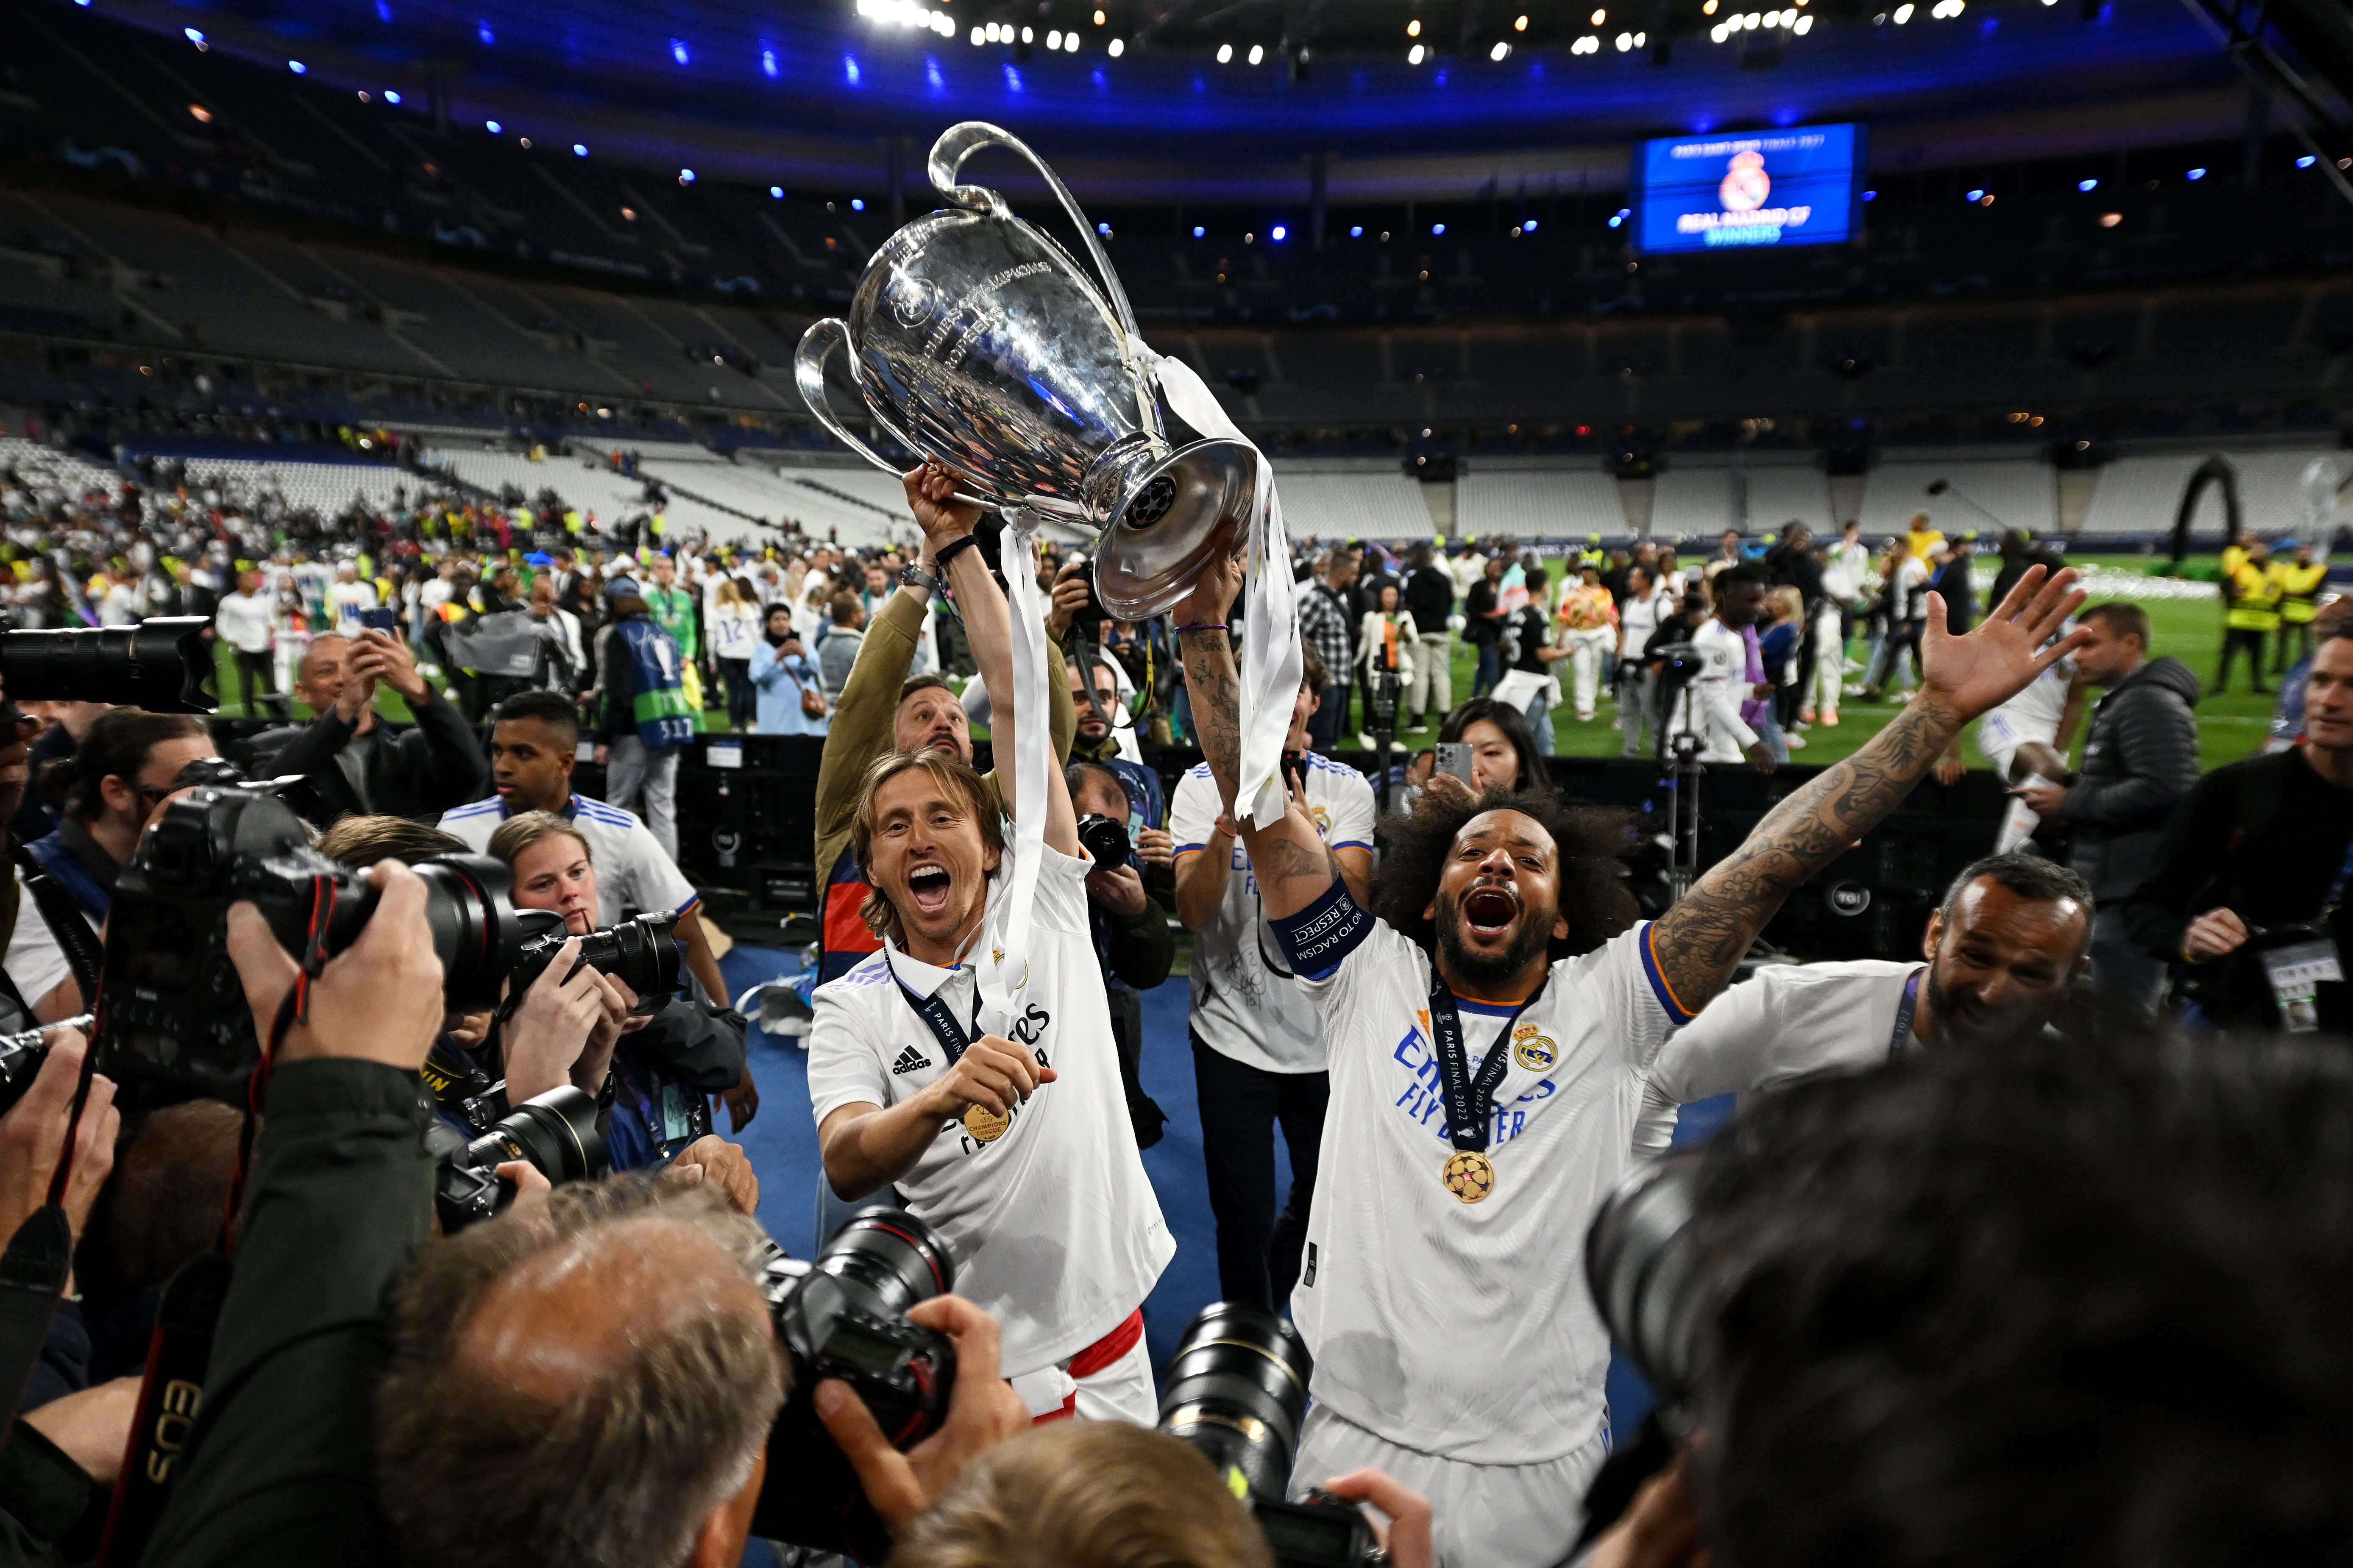 Așa arată bucuria istorică a lui Real Madrid, după ce a câștigat a 14-a oară Champions Legue. Cum au fost surprinși jucătorii